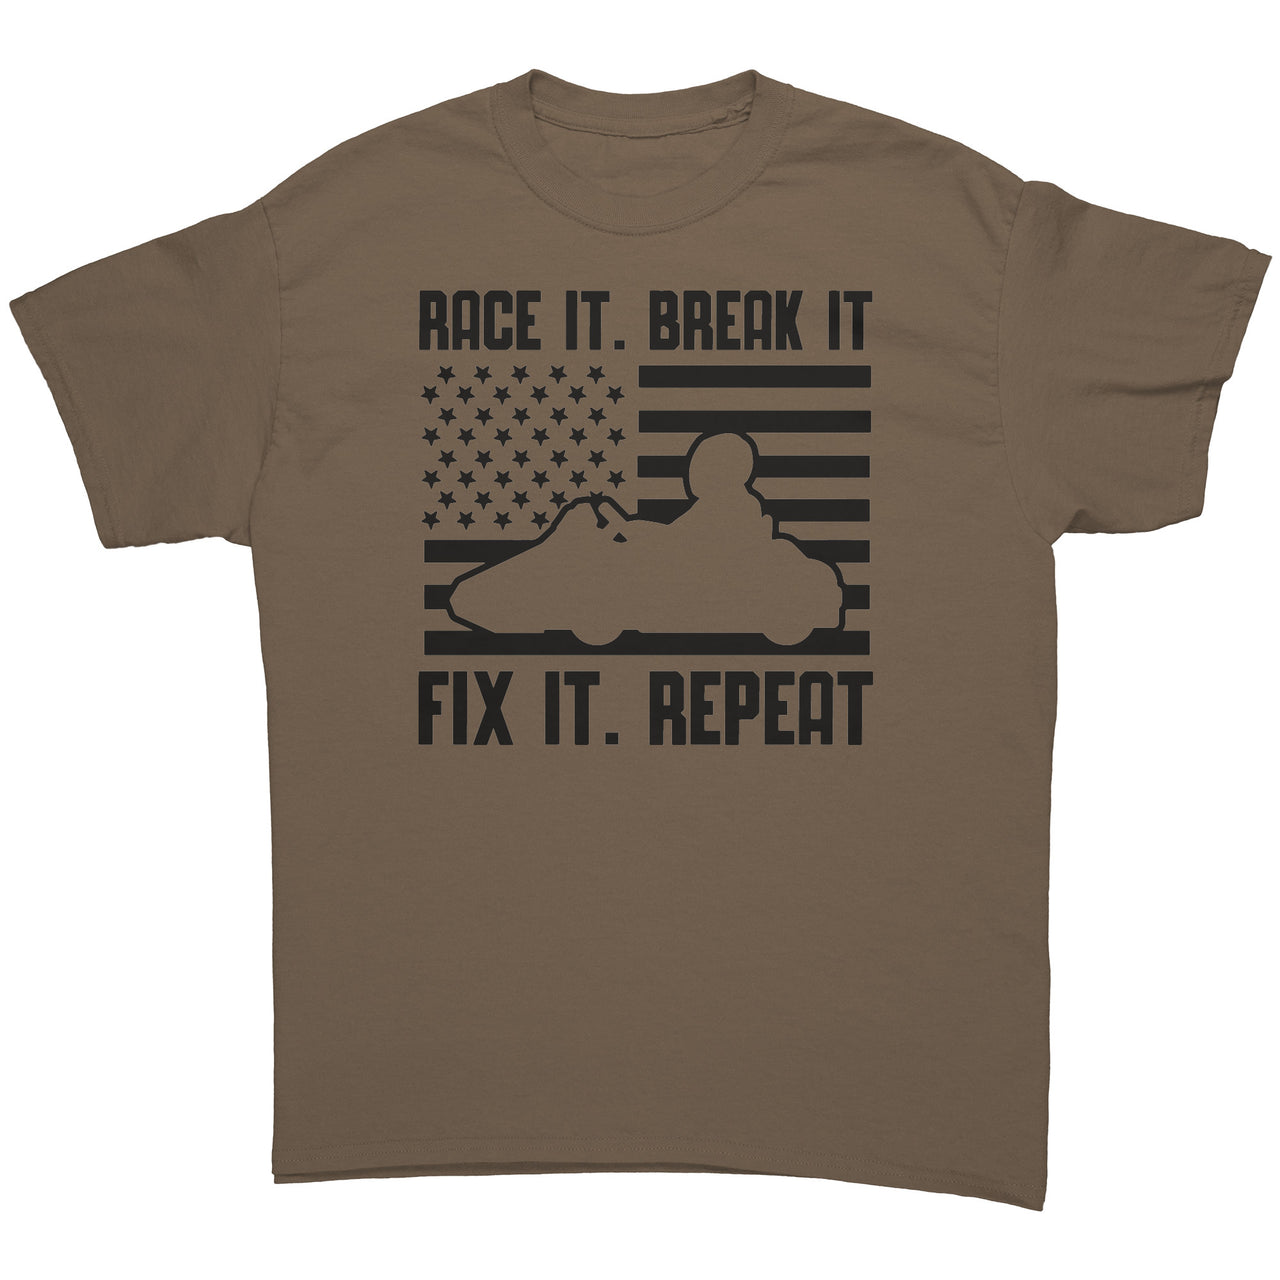 Go Kart Racing USA T-Shirts